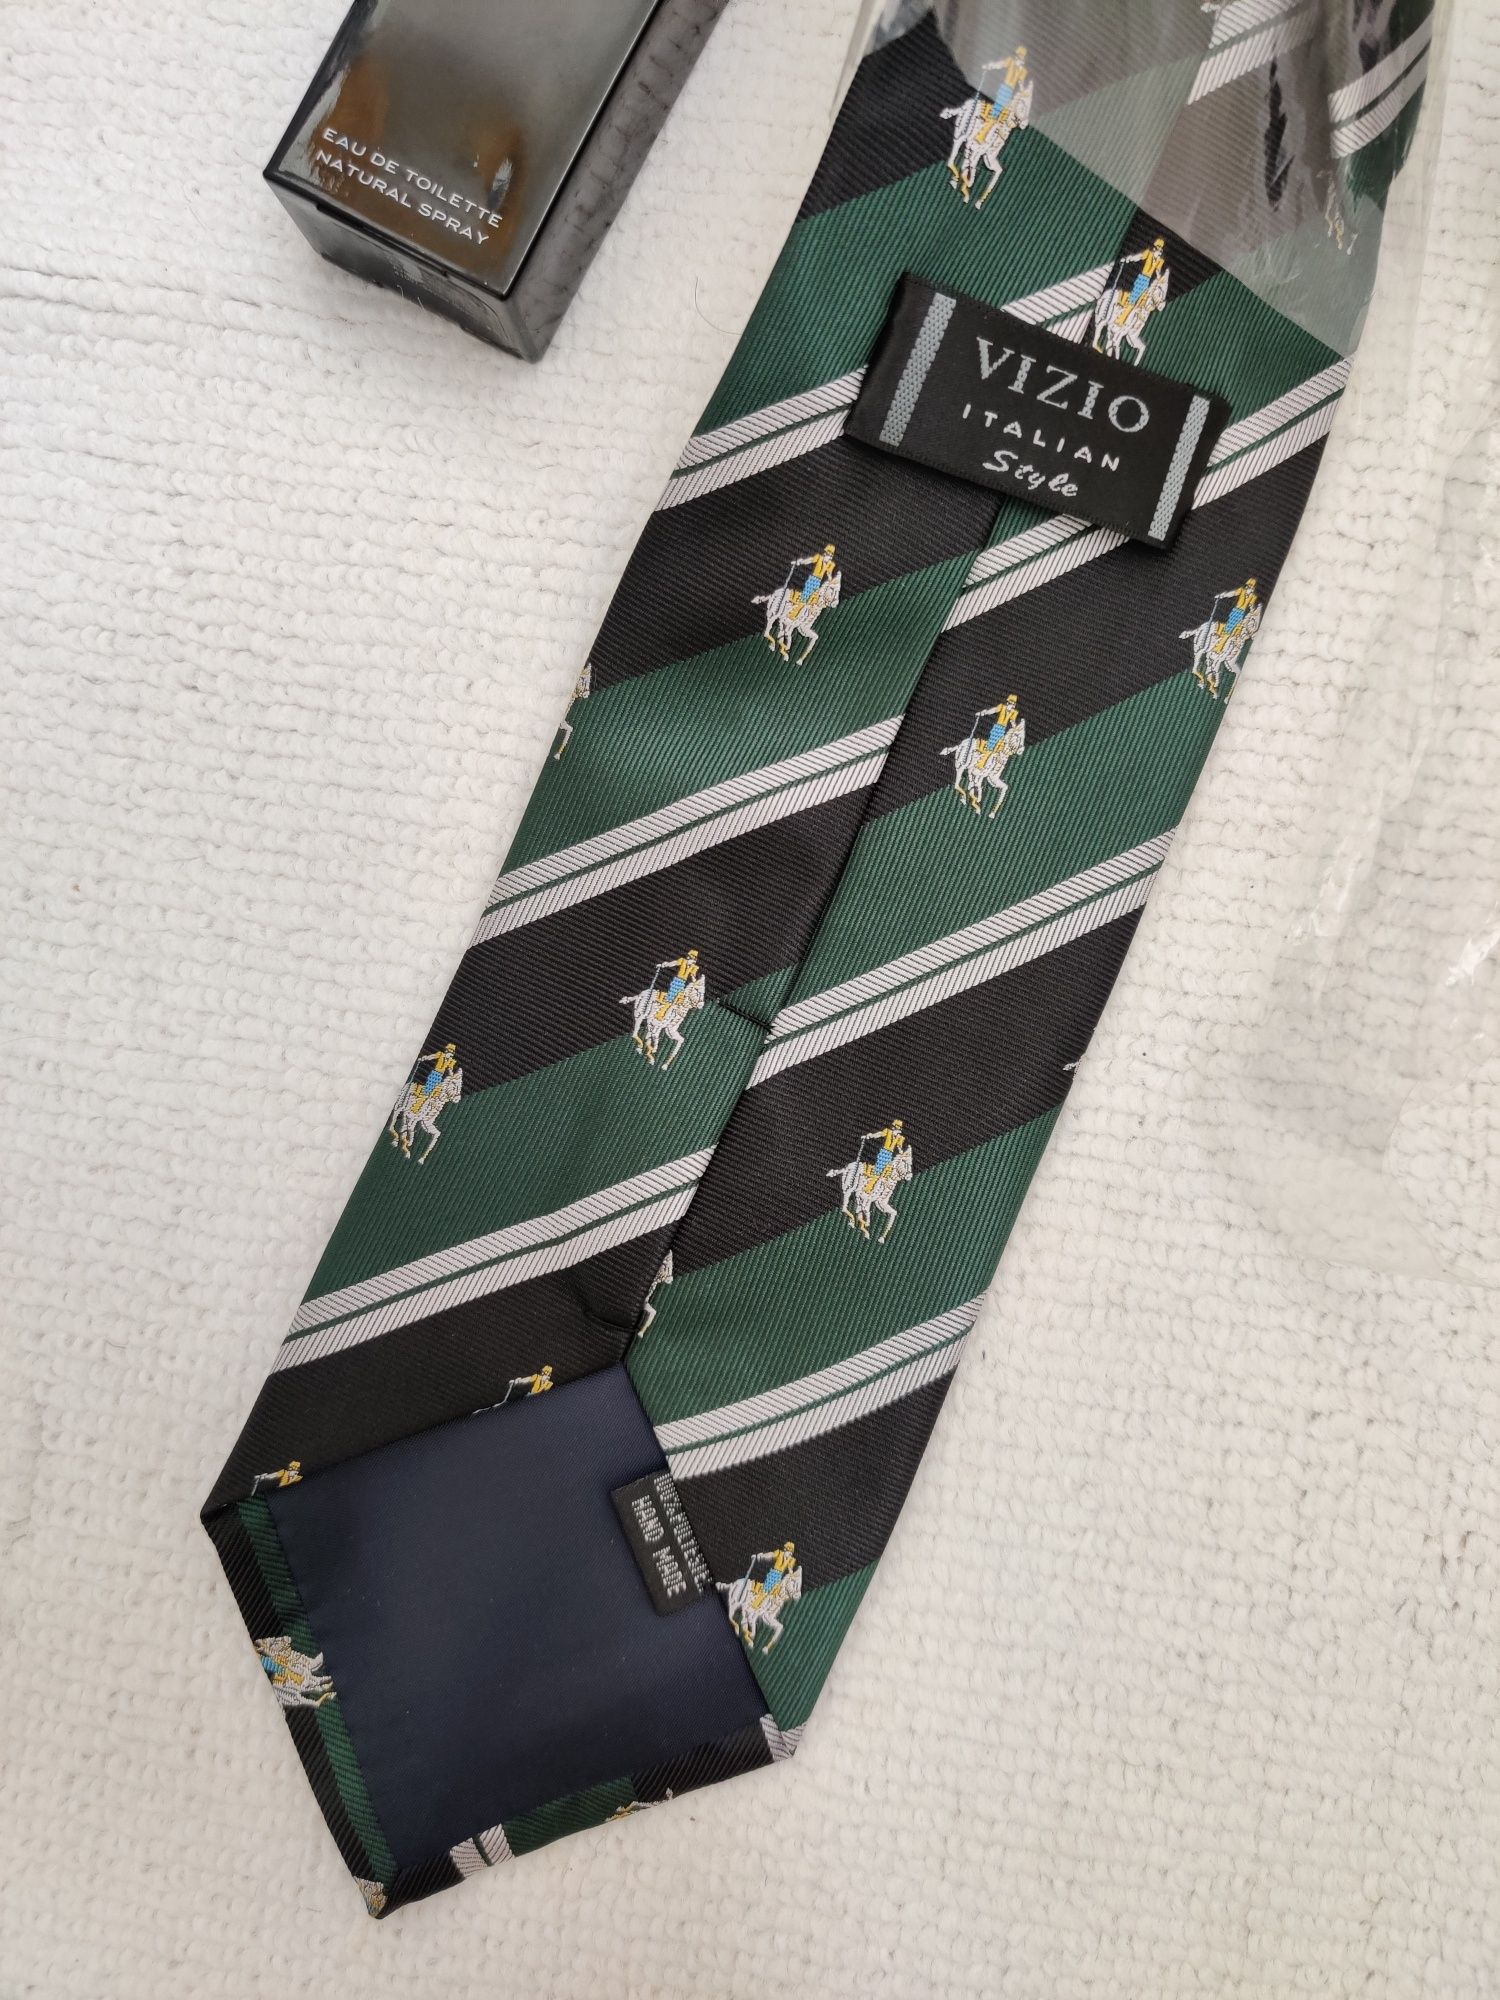 Галстук Polo стильный мужской галстук подарок на новый год подарок